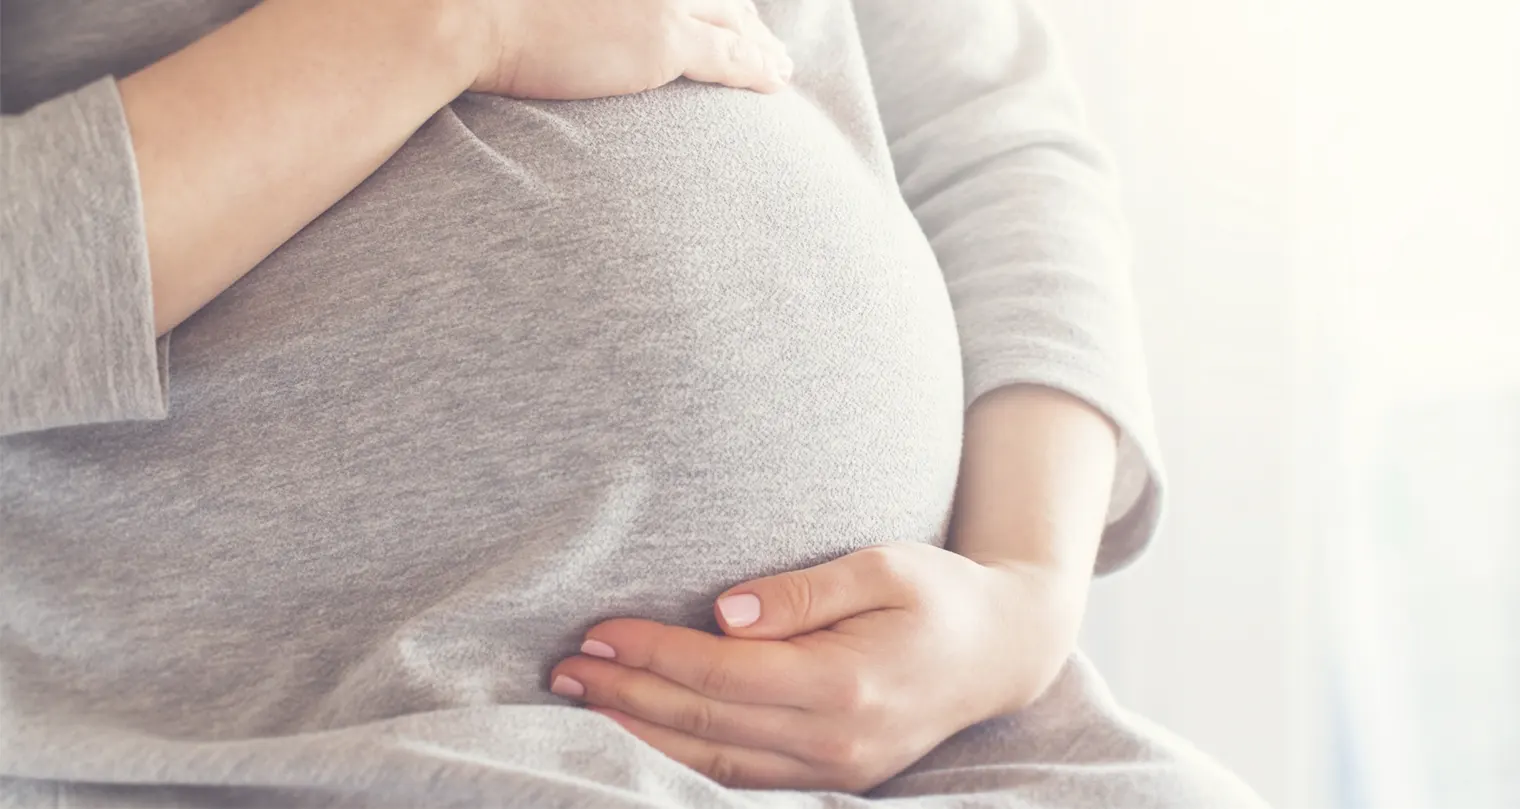 Pentingnya Pemeriksaan Kehamilan di Fasilitas Kesehatan atau Puskesmas